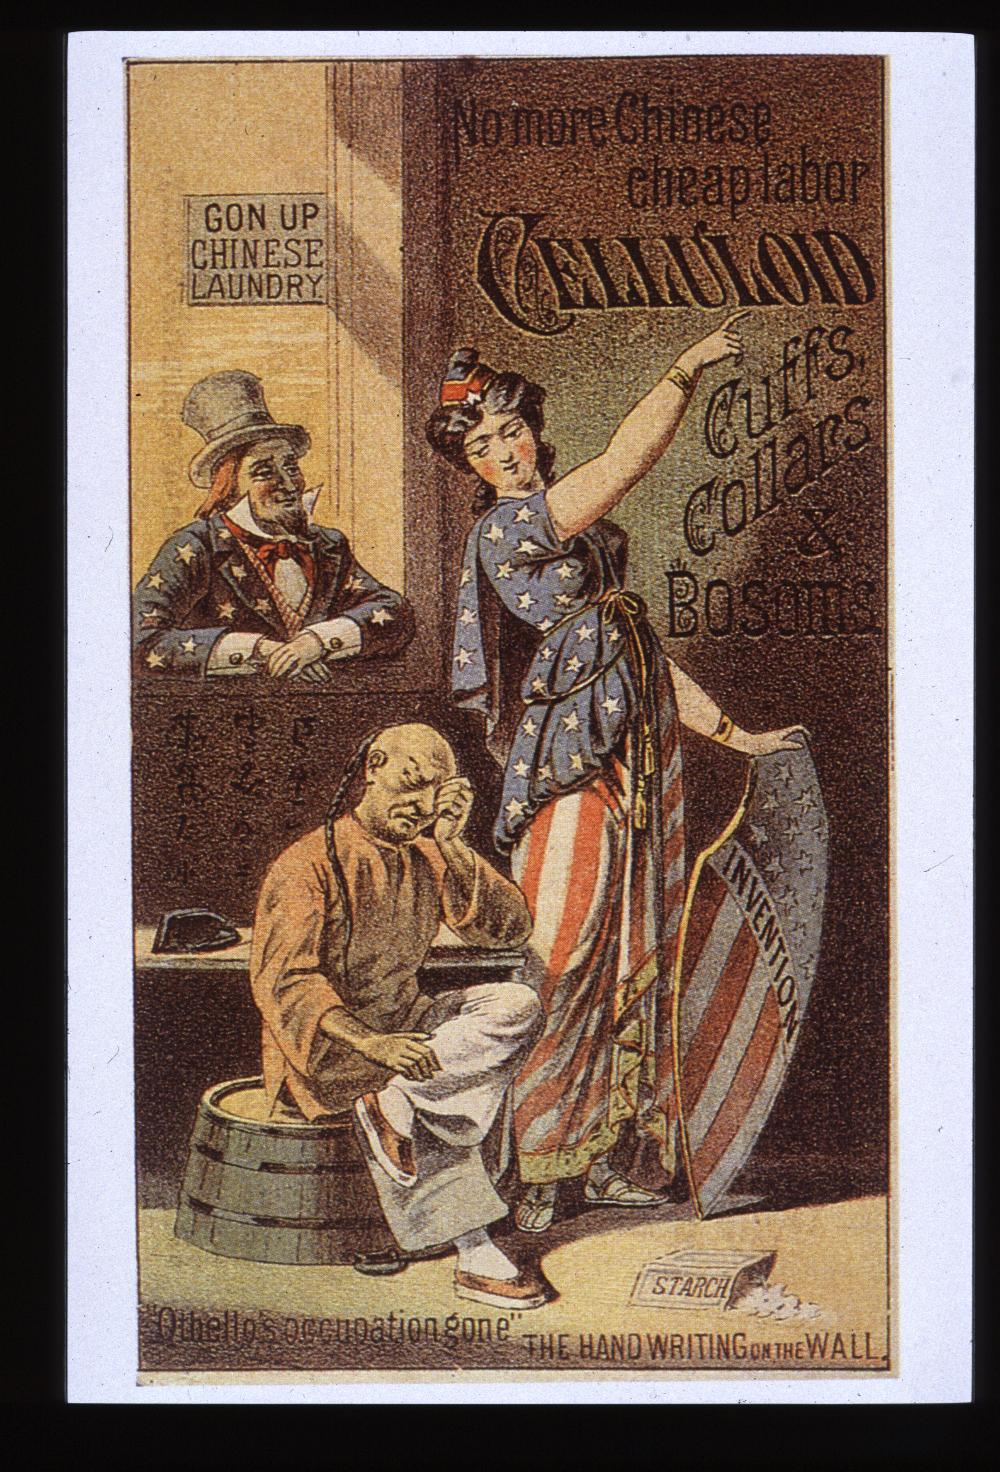 propaganda posters 1900s